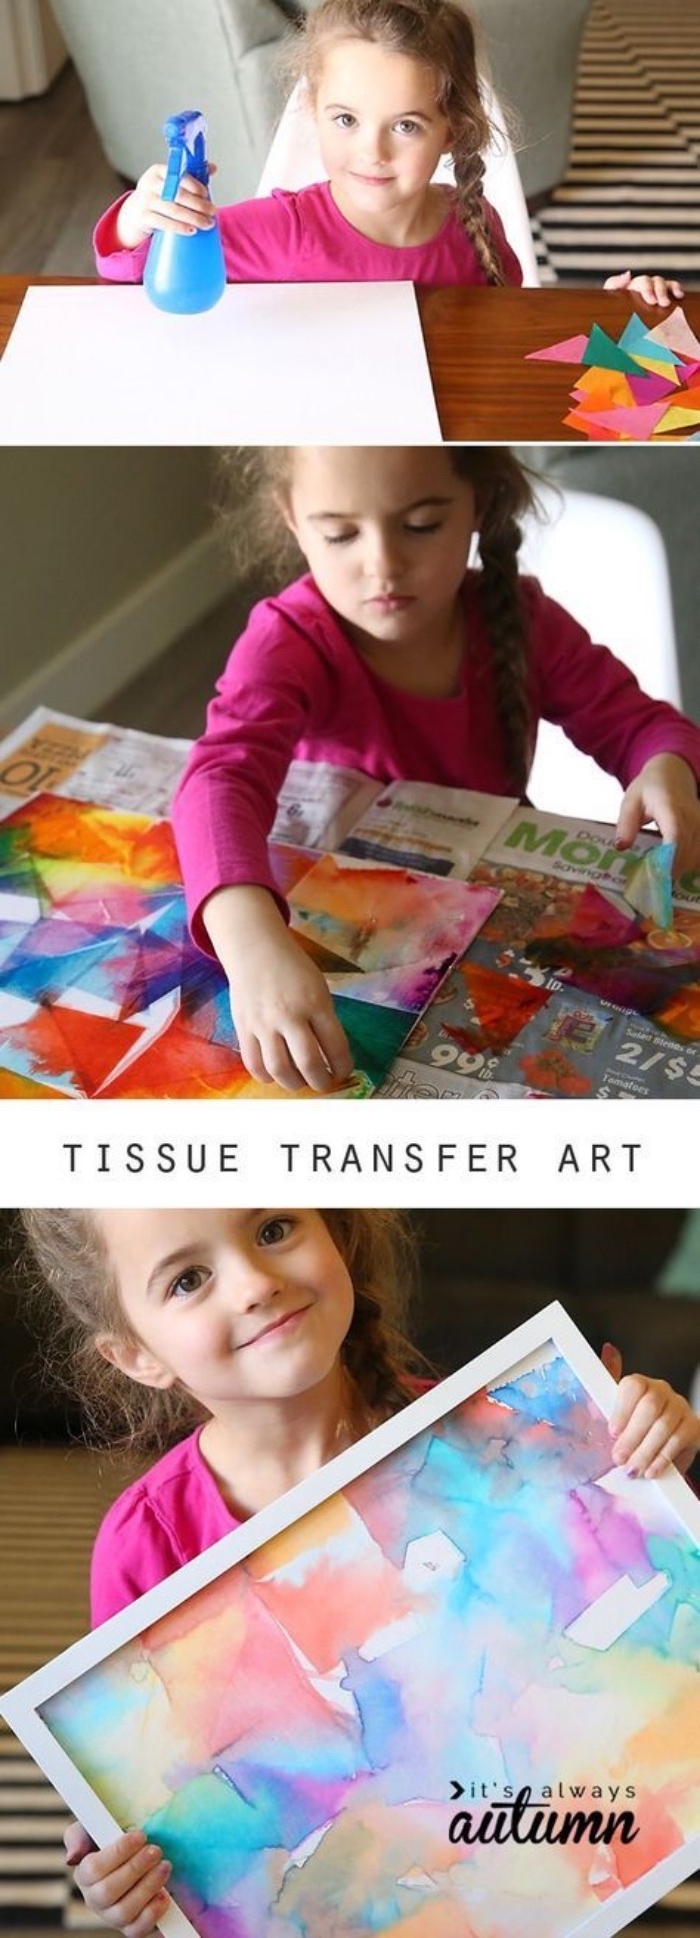 idée loisirs créatifs, activité manuelle maternelle primaire, une toile, décorée à motifs colorés, dessin créatif enfant